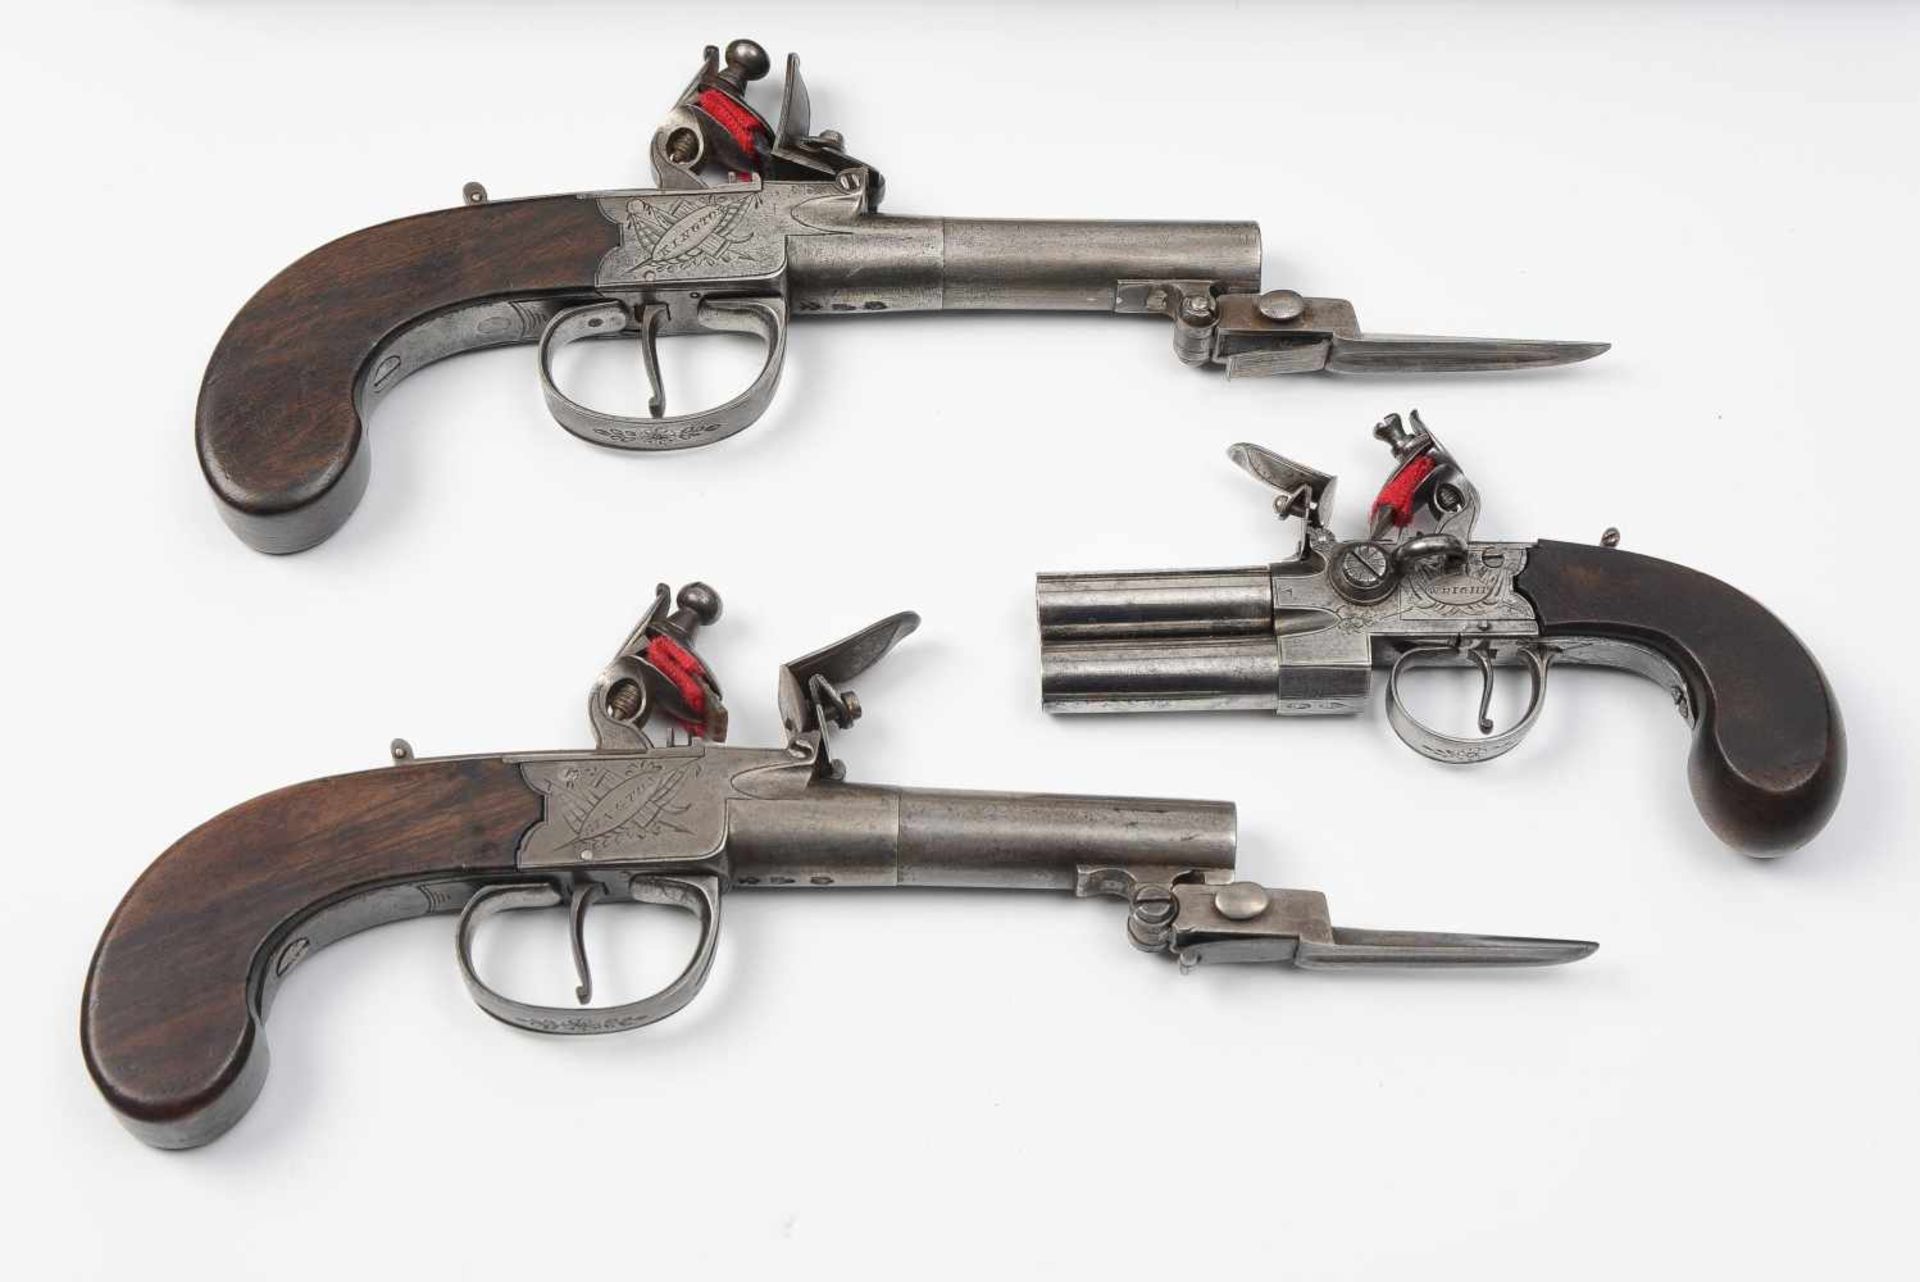 Kassette mit drei SteinschlosspistolenWright Kington, Engand, 18.Jh. 1 Paar Steinschlosspistolen mit - Bild 2 aus 4